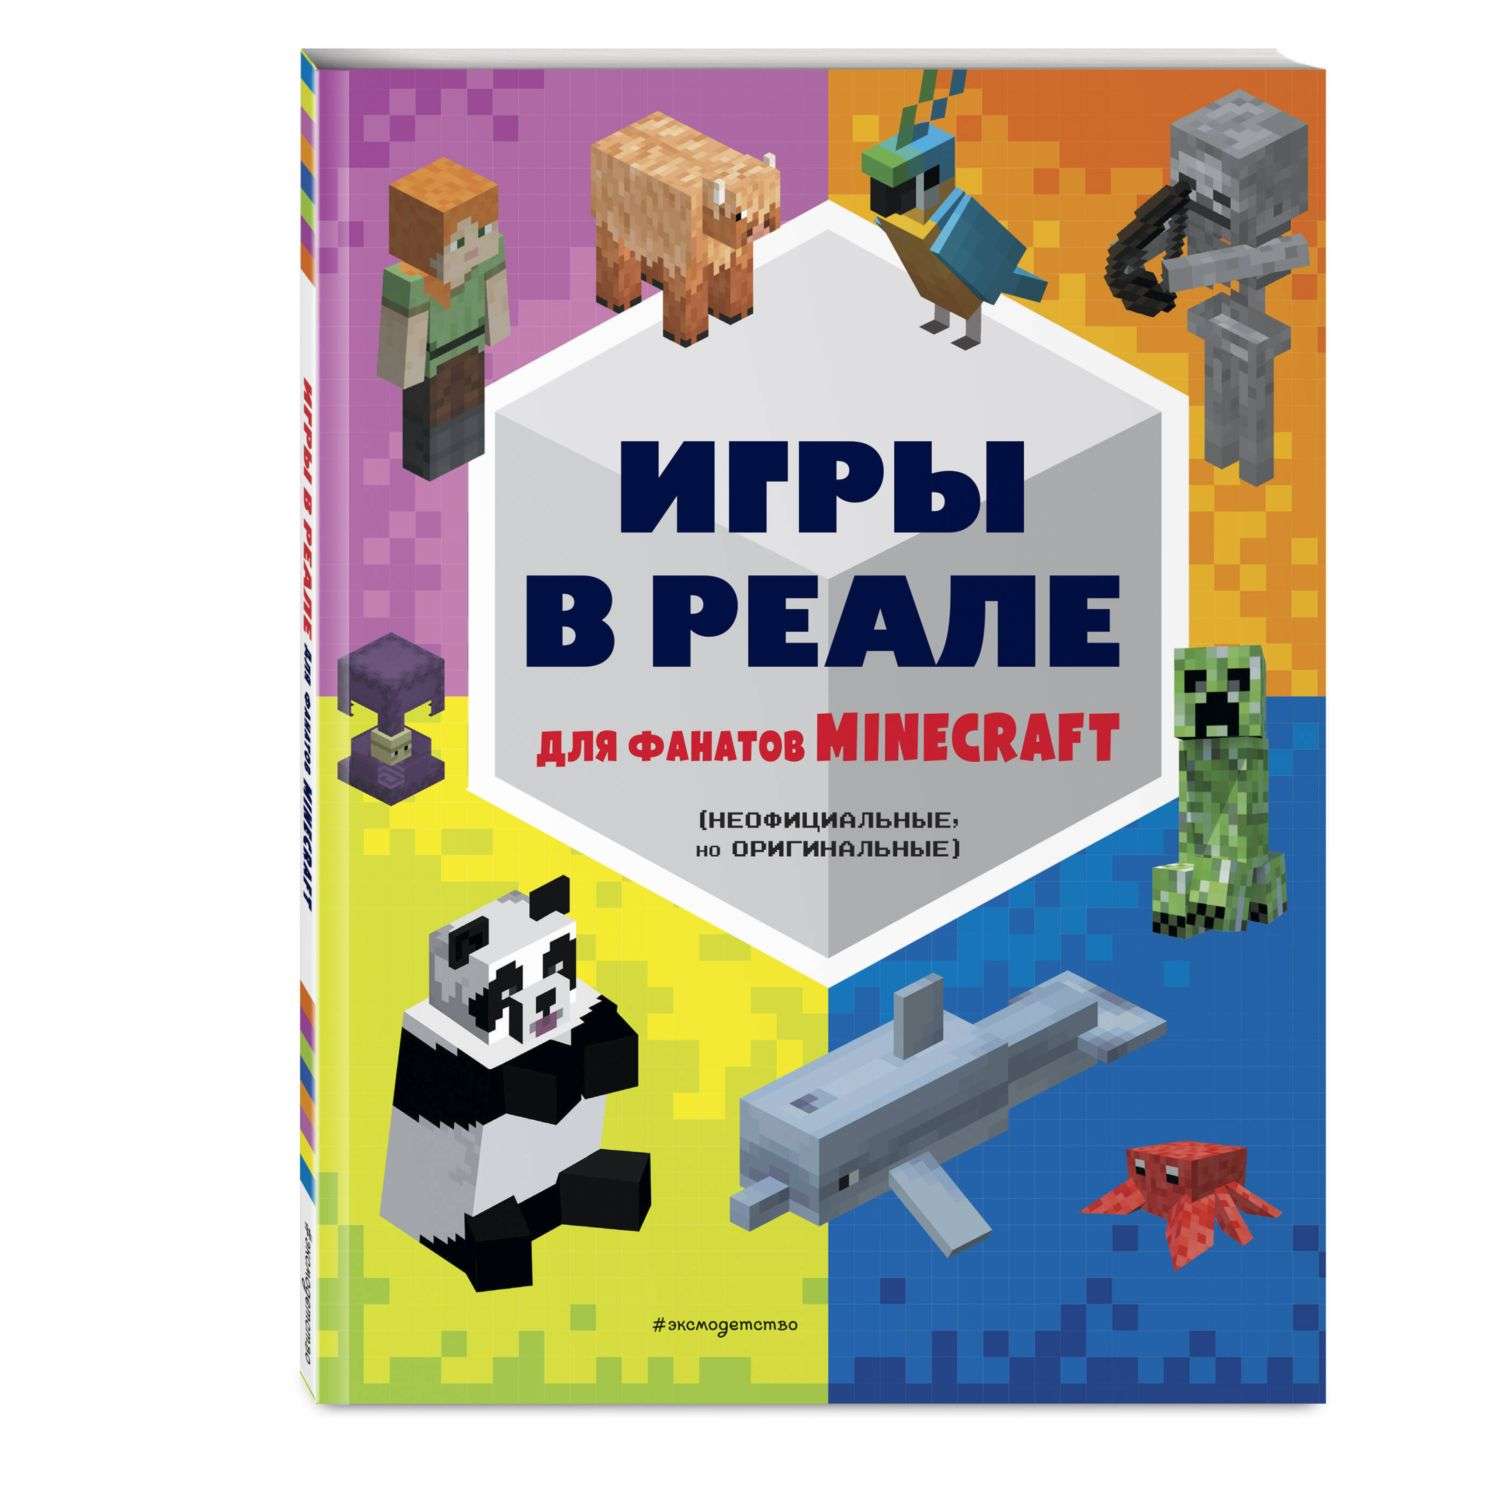 Книга Minecraft Игры в реале для фанатов Minecraft неофициальные но оригинальные - фото 1